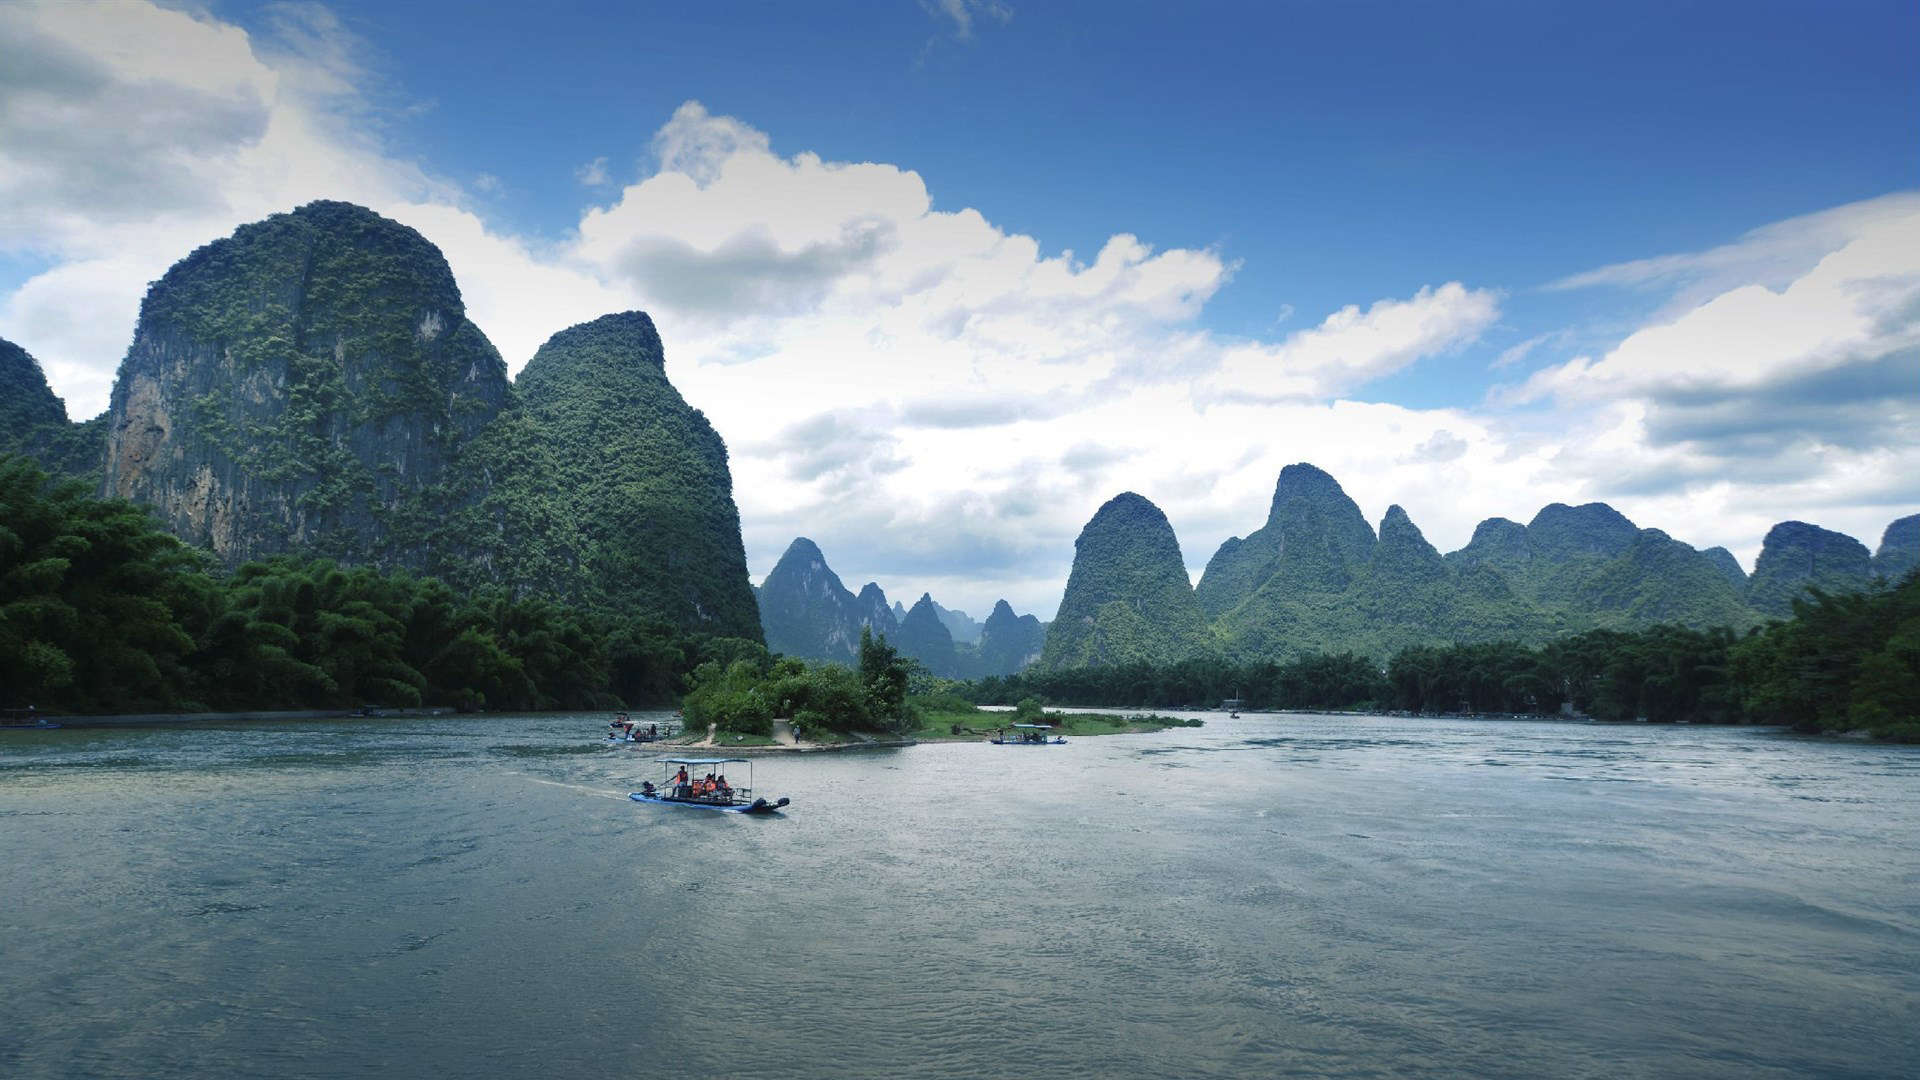 高清桂林山水风景壁纸图片